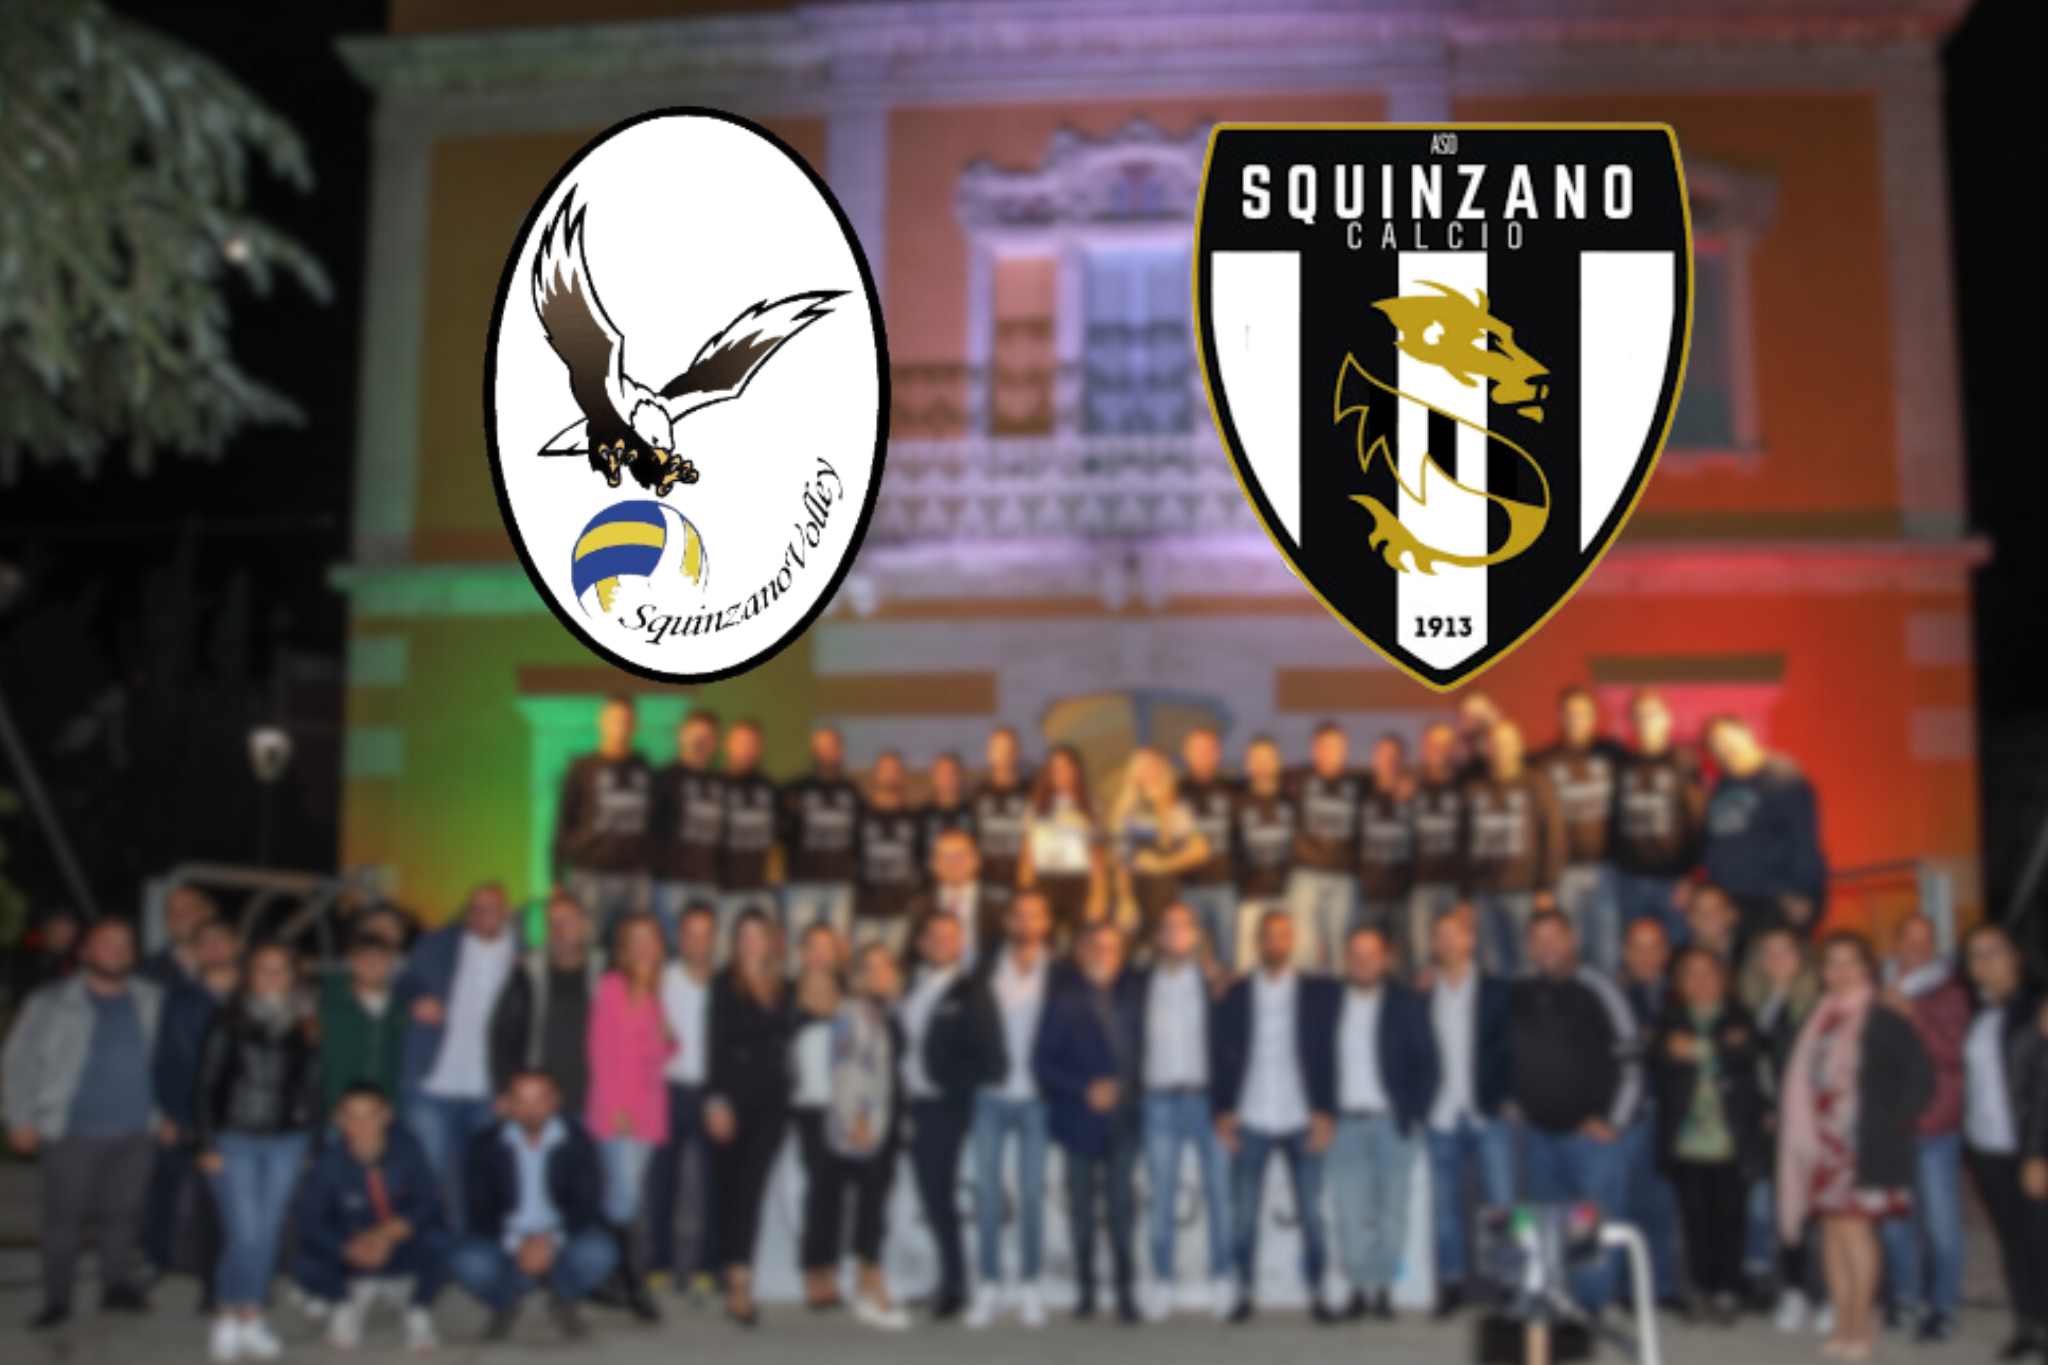 Grande festa dello sport a Squinzano: questa sera la presentazione ufficiale di Squinzano Calcio 1913 e Squinzano Volley 2017